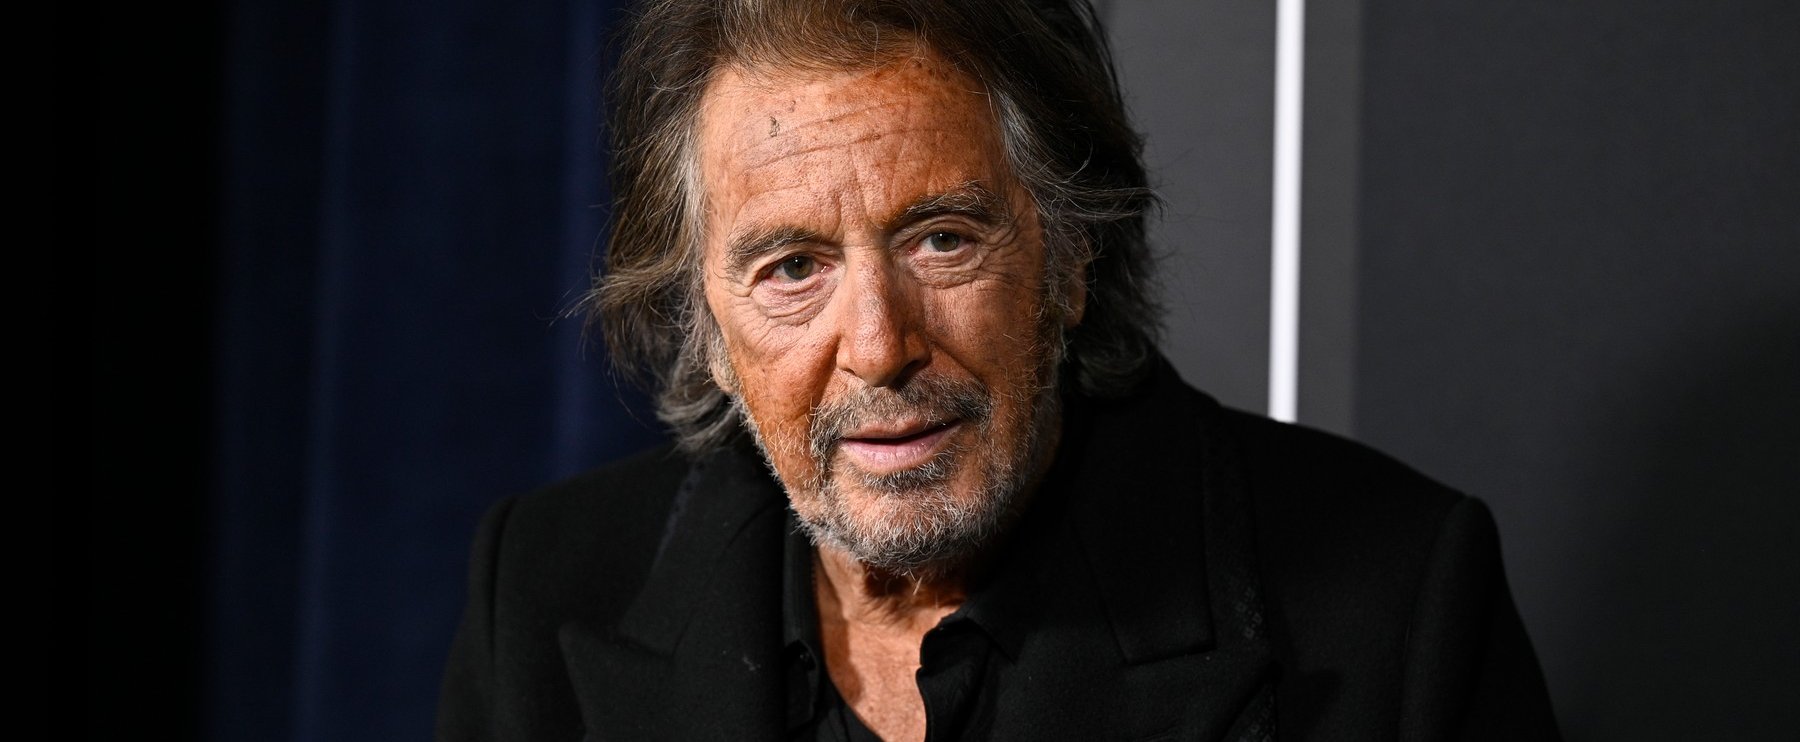 Így néz ki Al Pacino 53 évvel fiatalabb barátnője, aki egy igazi bombázó